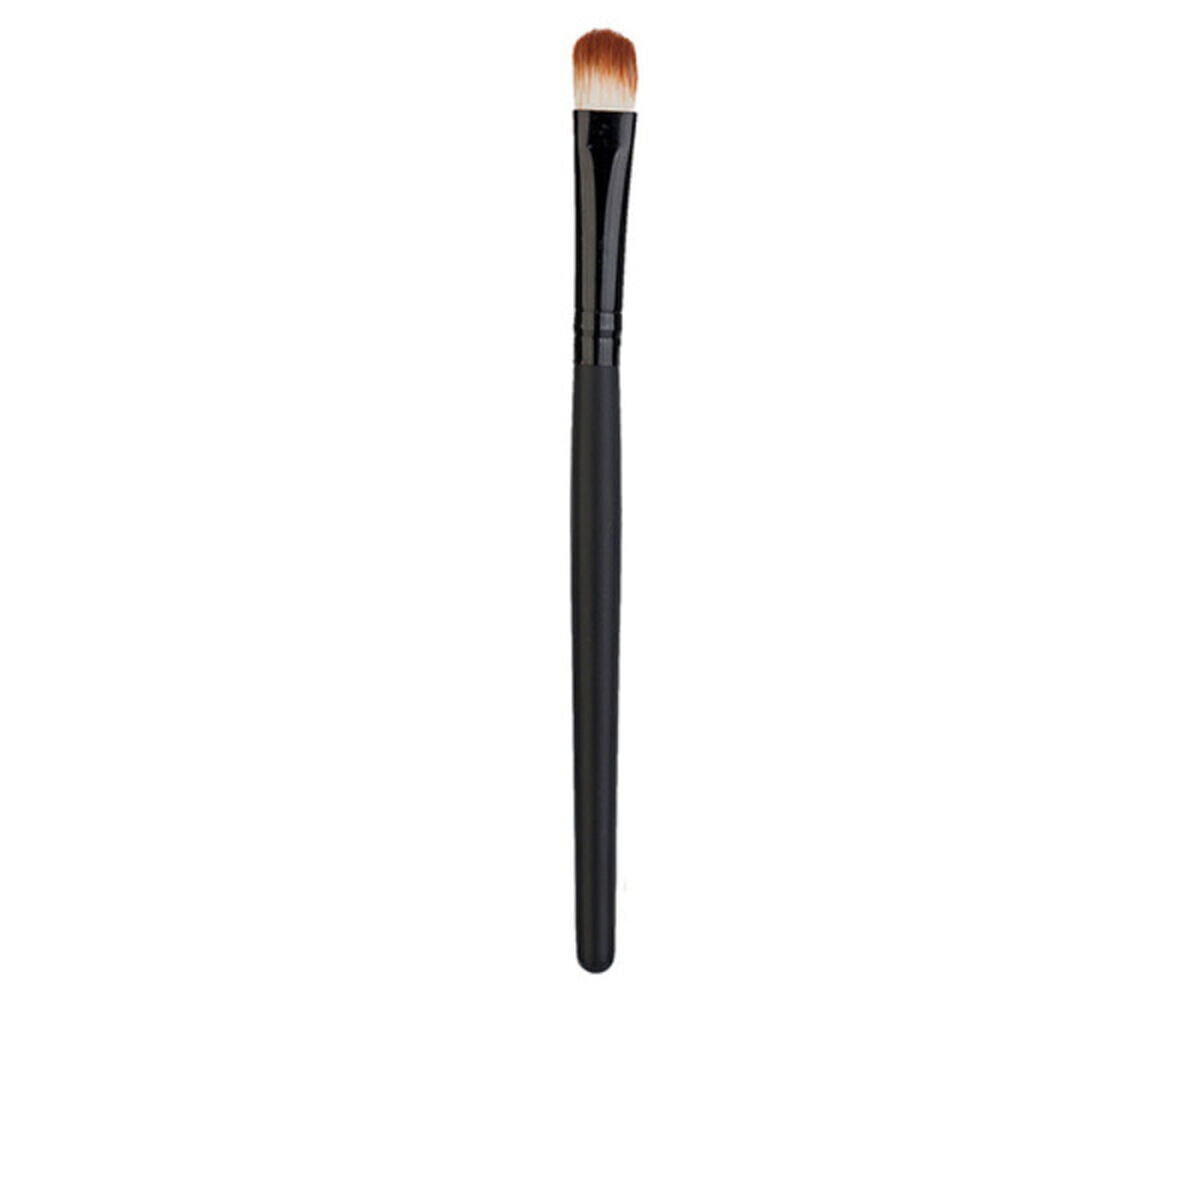 Make-up Brush Glam Of Sweden Brush (1 pc)